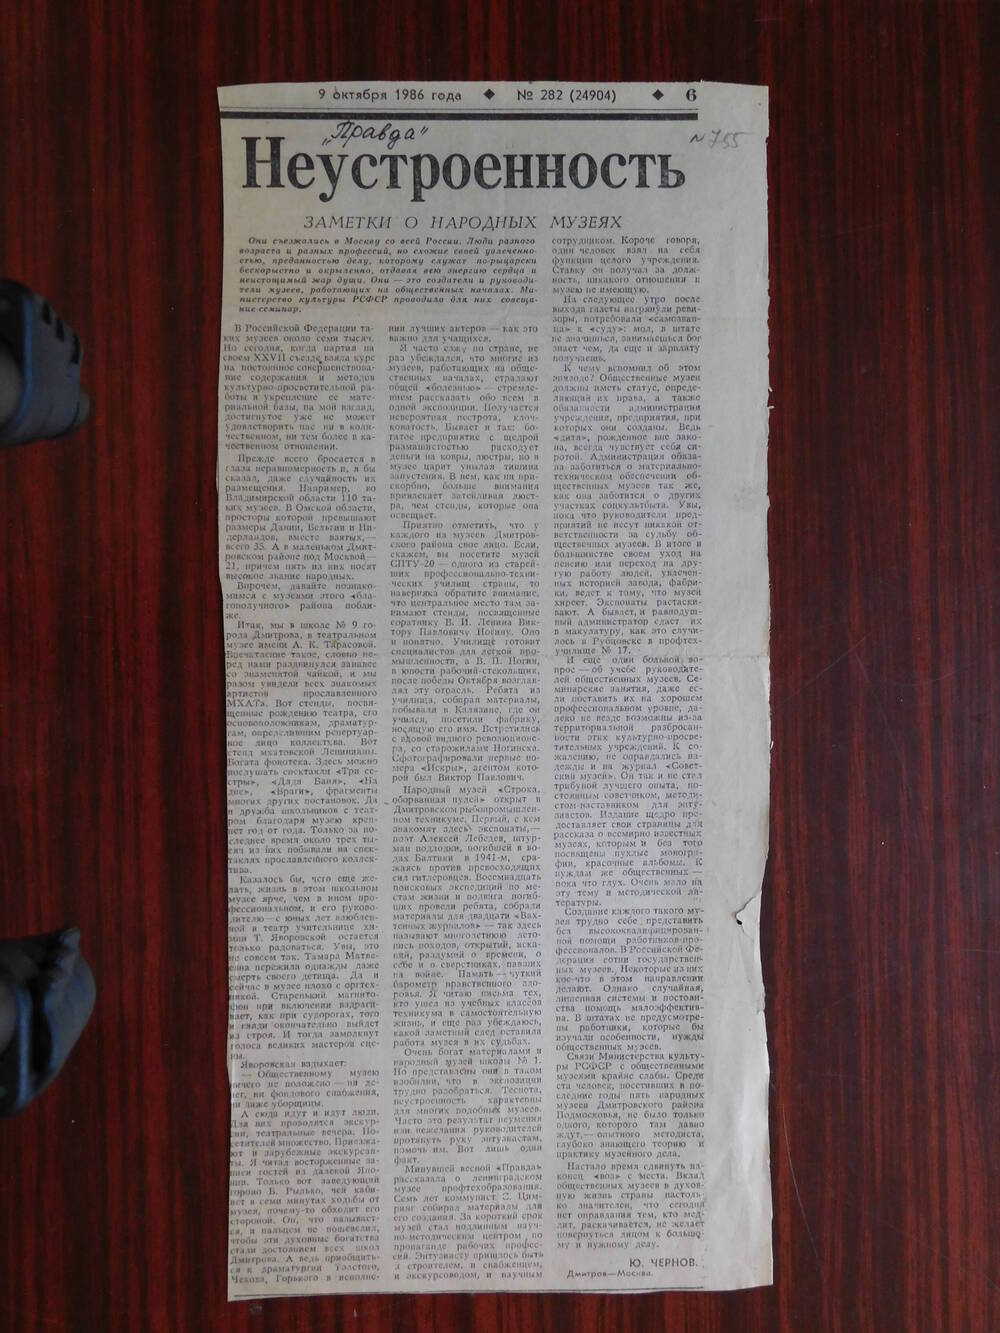 Фрагмент газеты Правда № 282 от 09.10.1986 г. Ст. Ю. Чернов. Неустроенность. Москва.